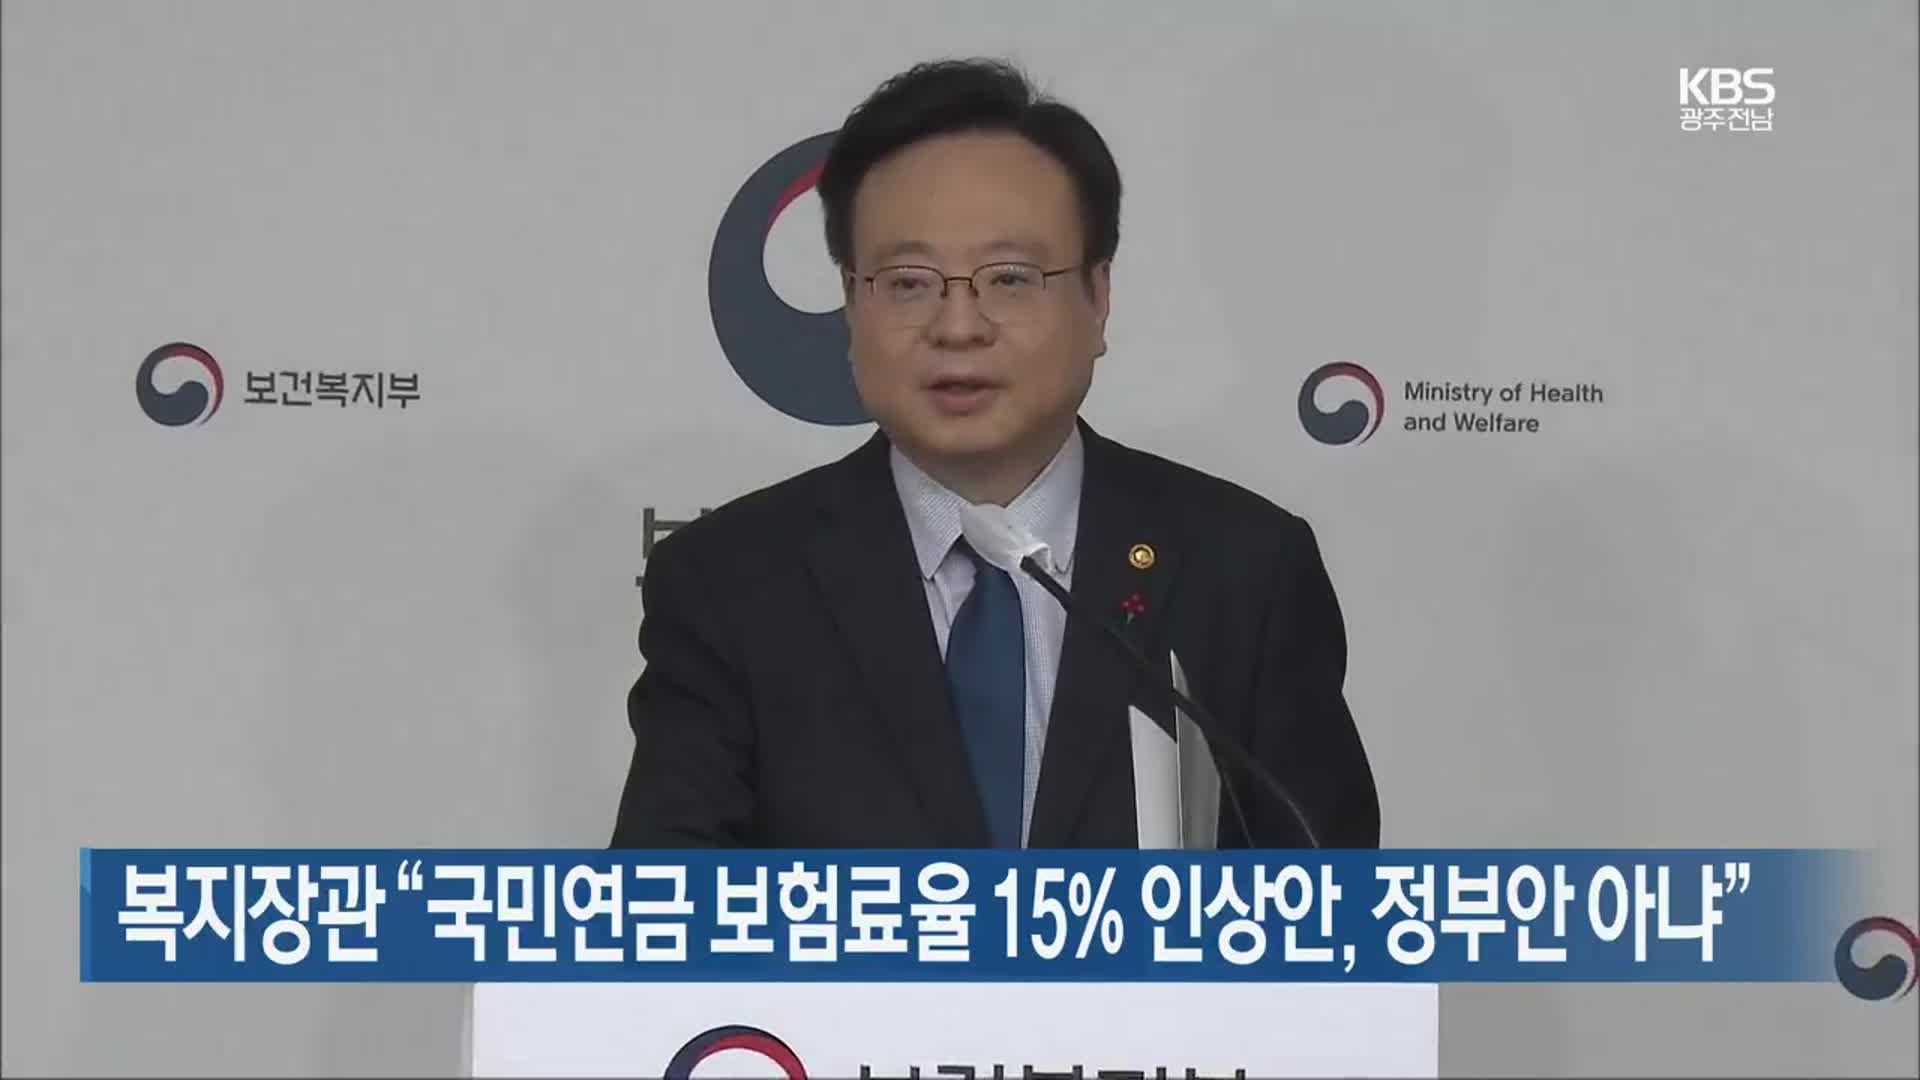 복지장관 “국민연금 보험료율 15% 인상안, 정부안 아냐”